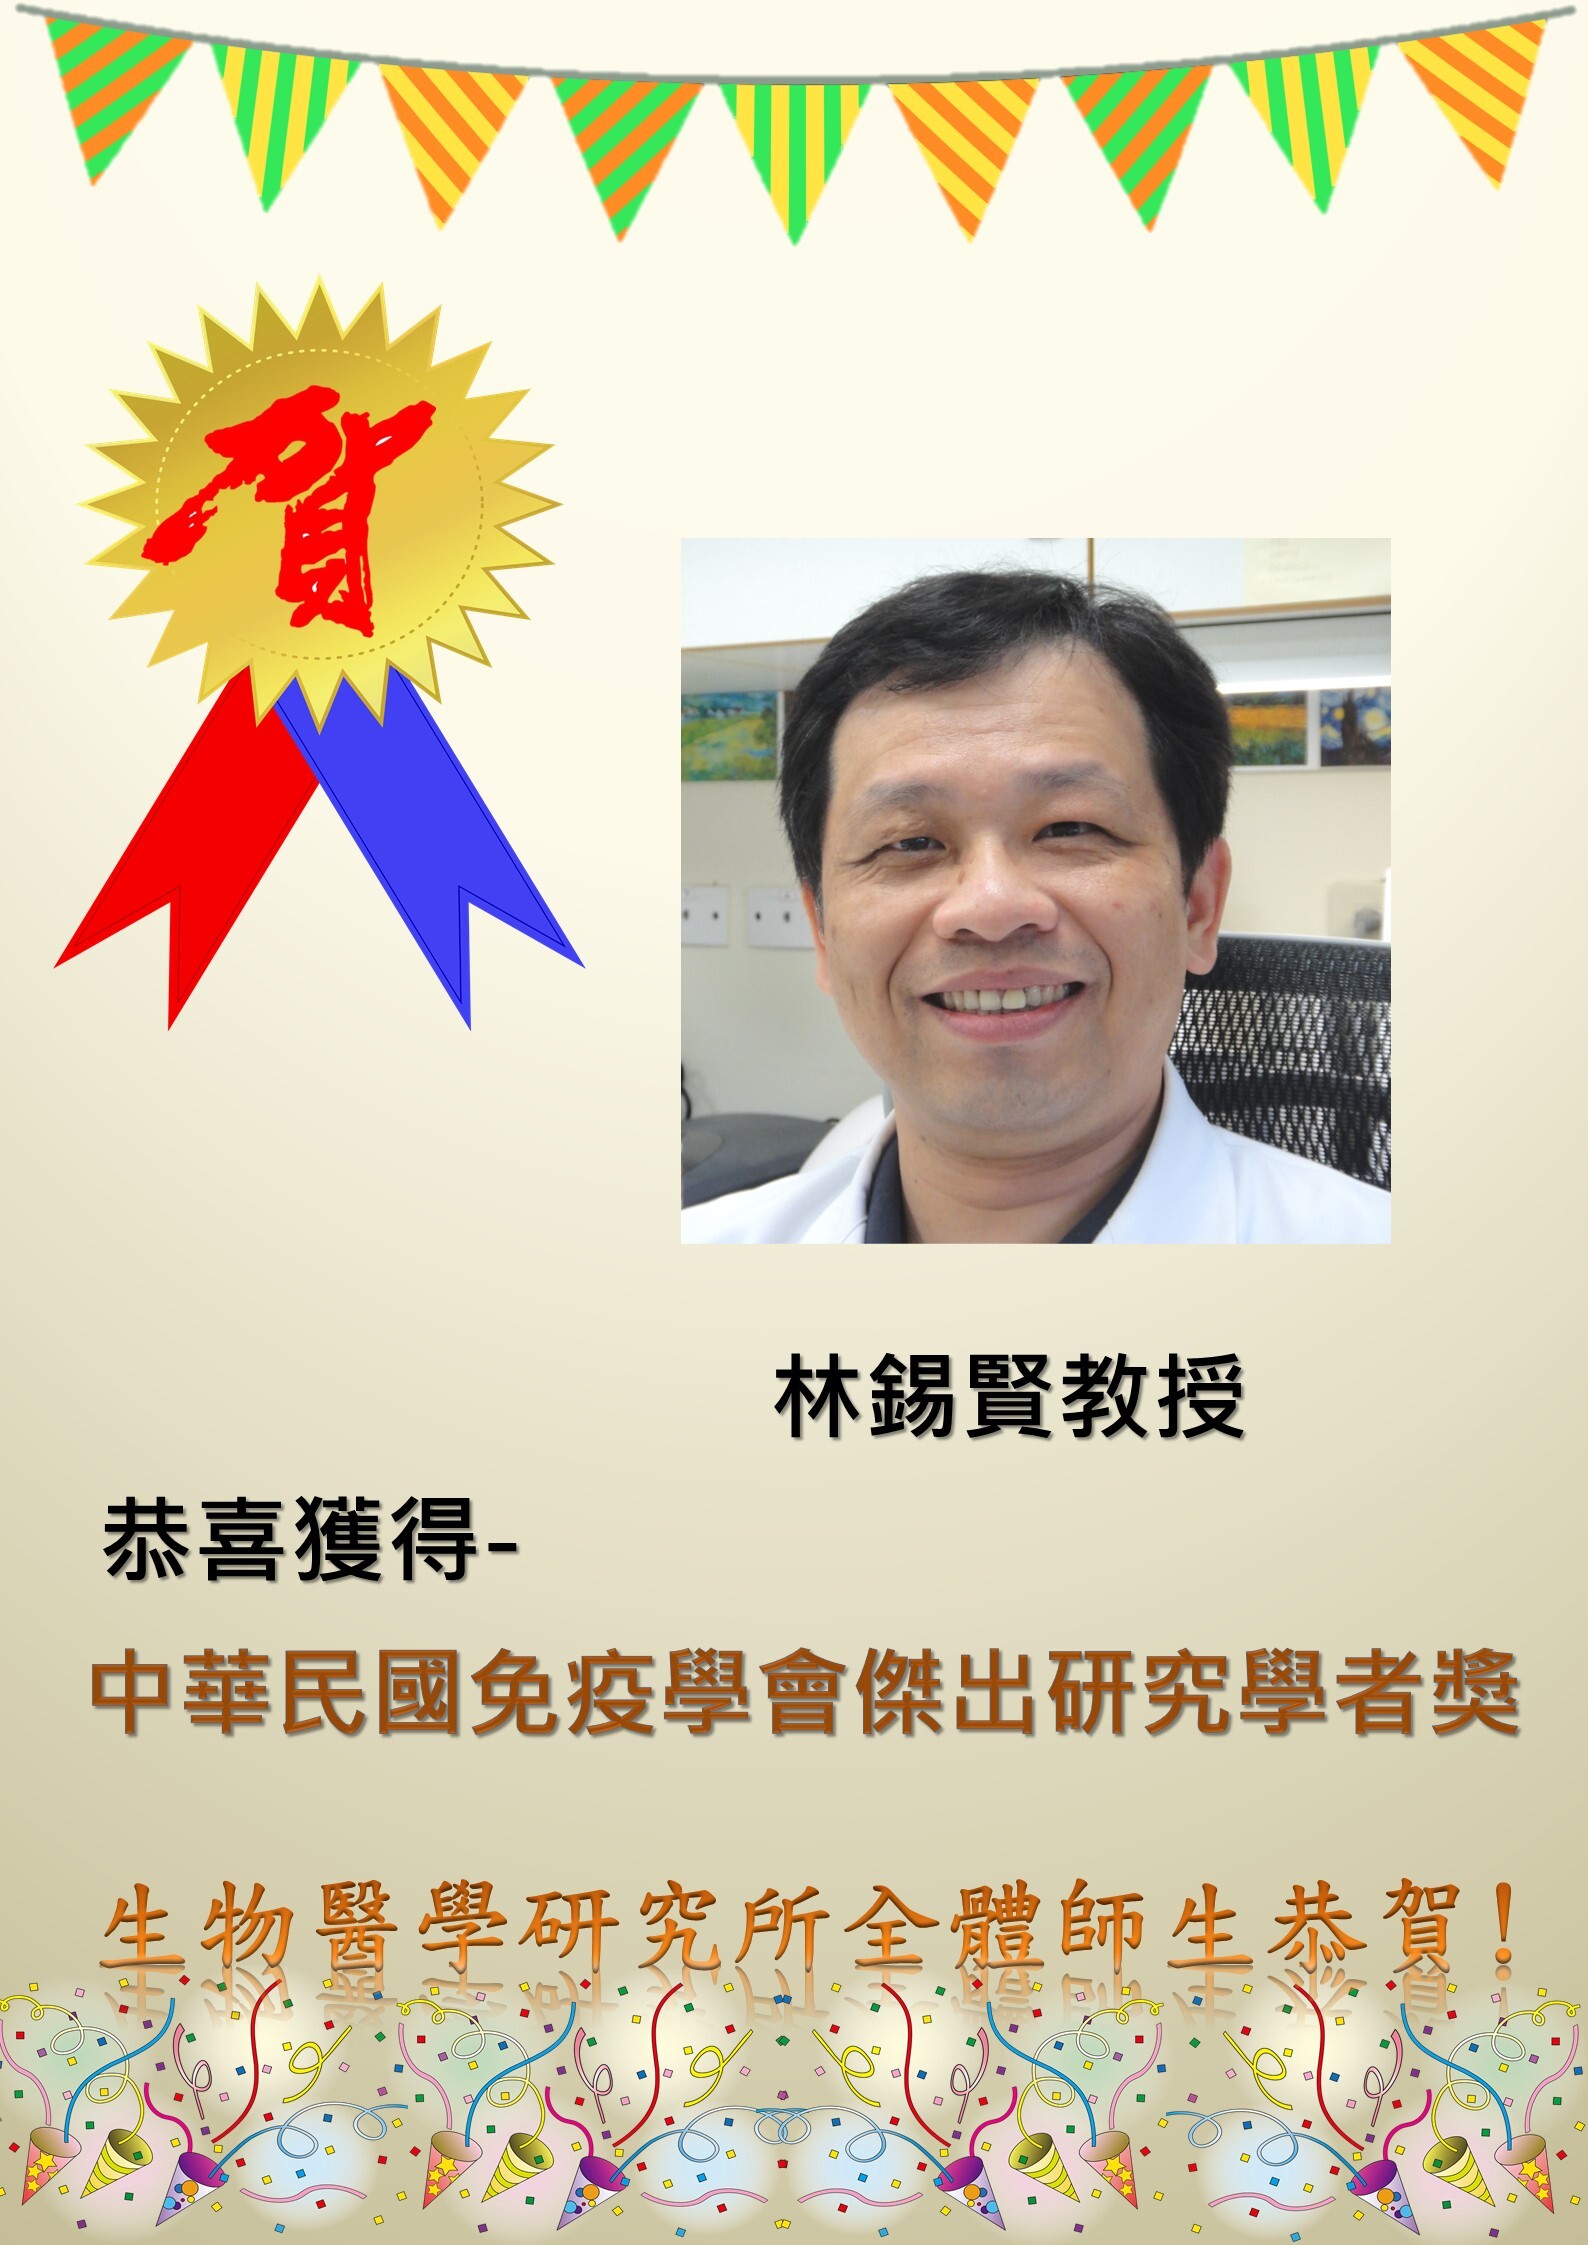 恭喜林錫賢教授獲得中華民國免疫學會傑出研究學者獎